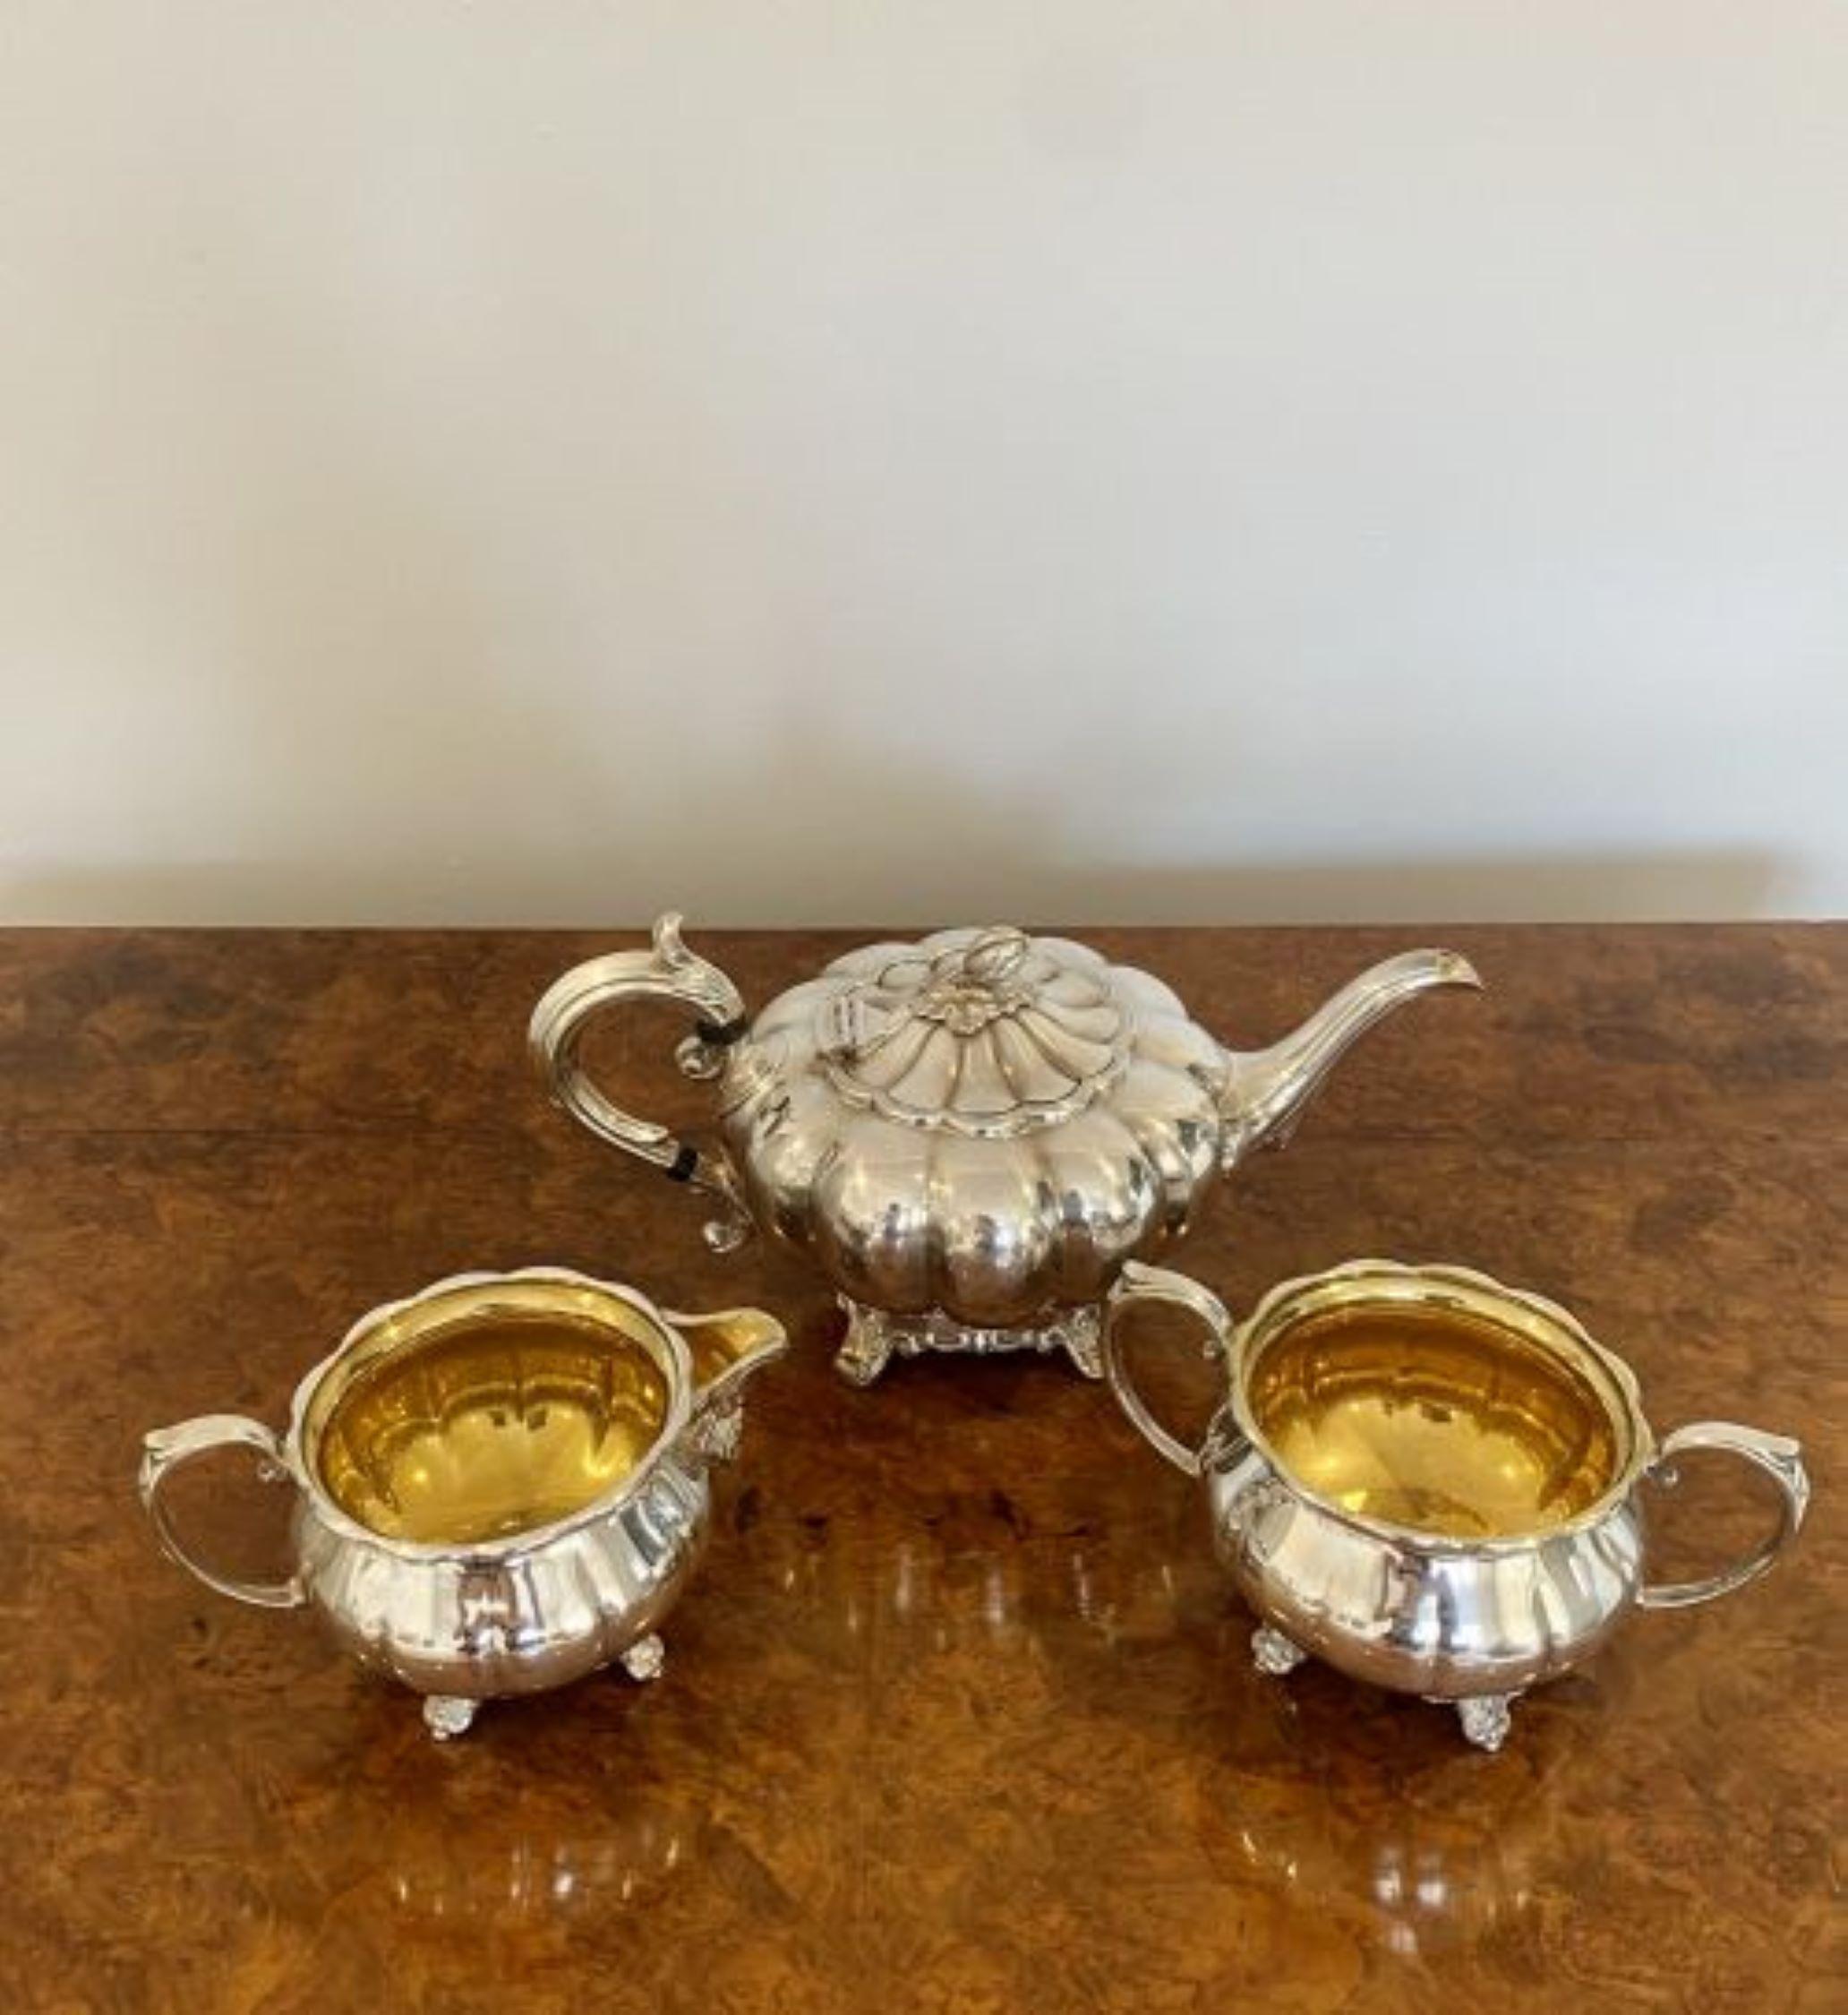 silver on copper tea set markings